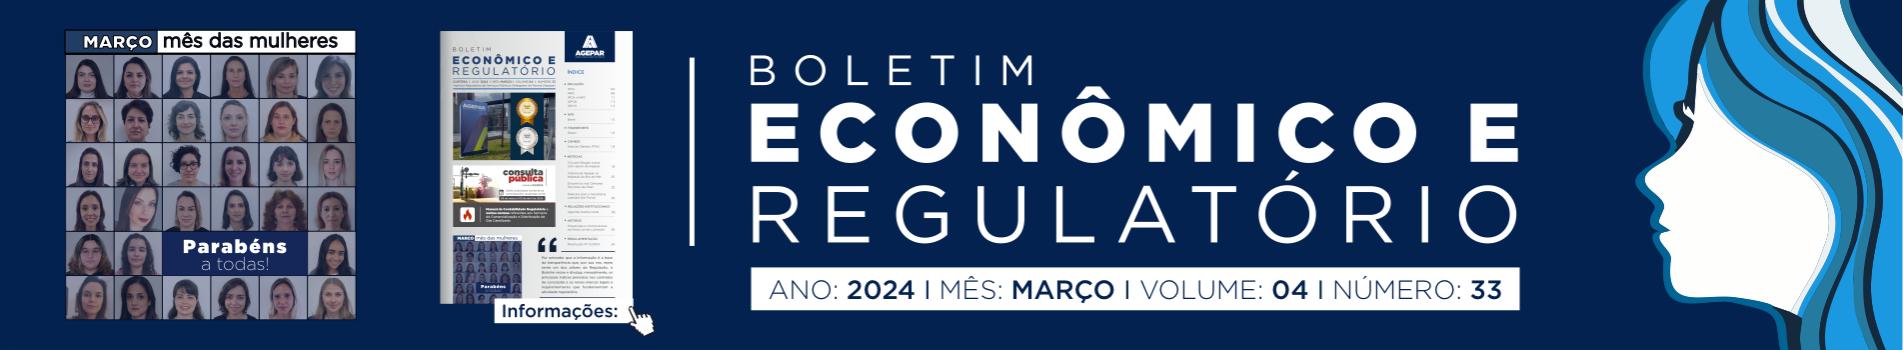 Boletim Econômico e Regulatório - Número 33 - Março 2024